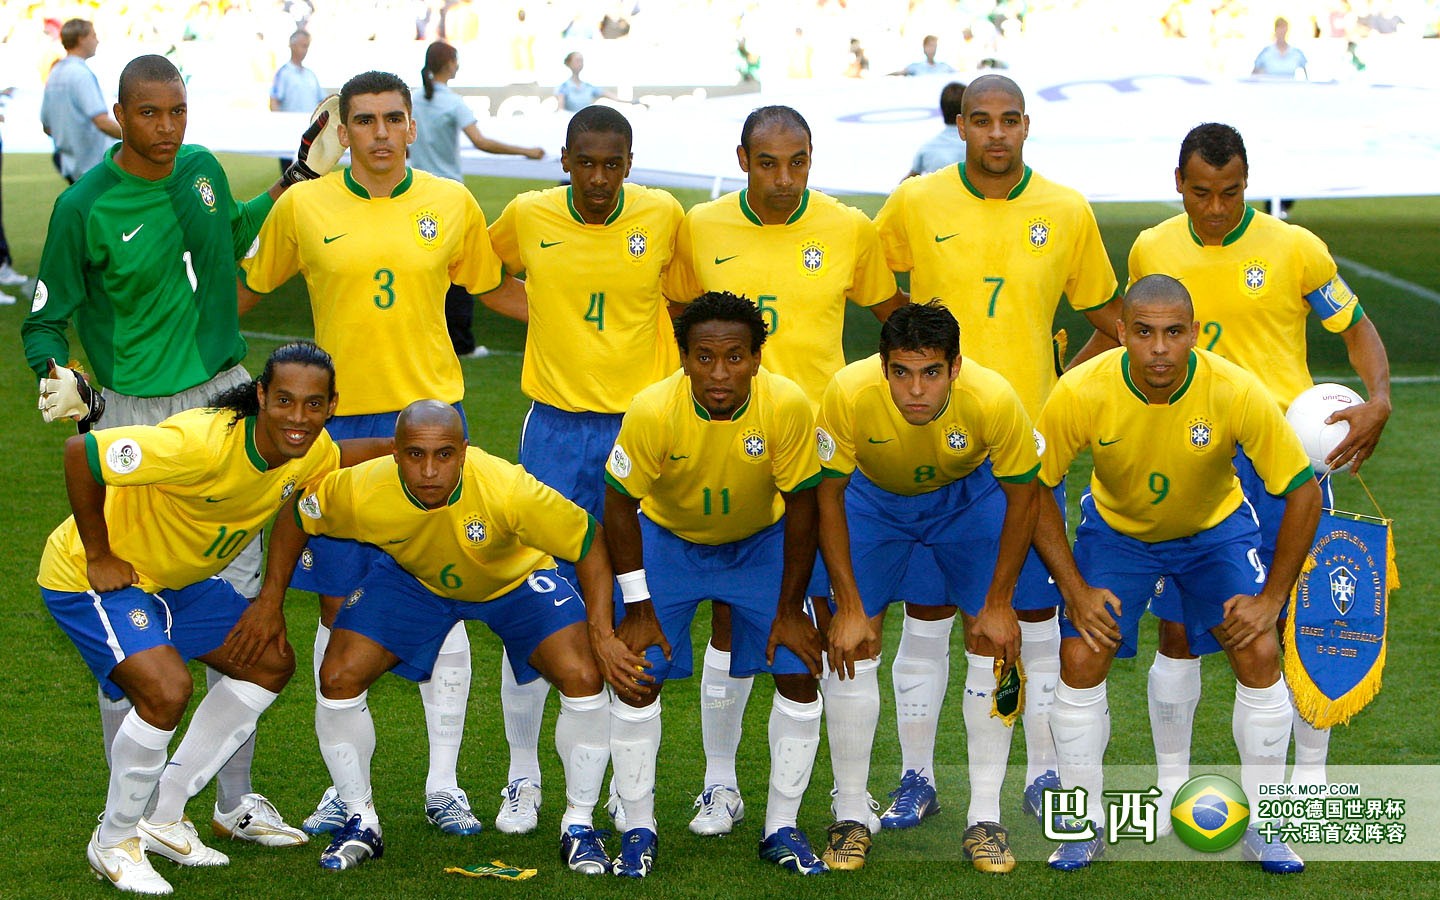 壁纸秀:巴西国家队 - 懂球帝